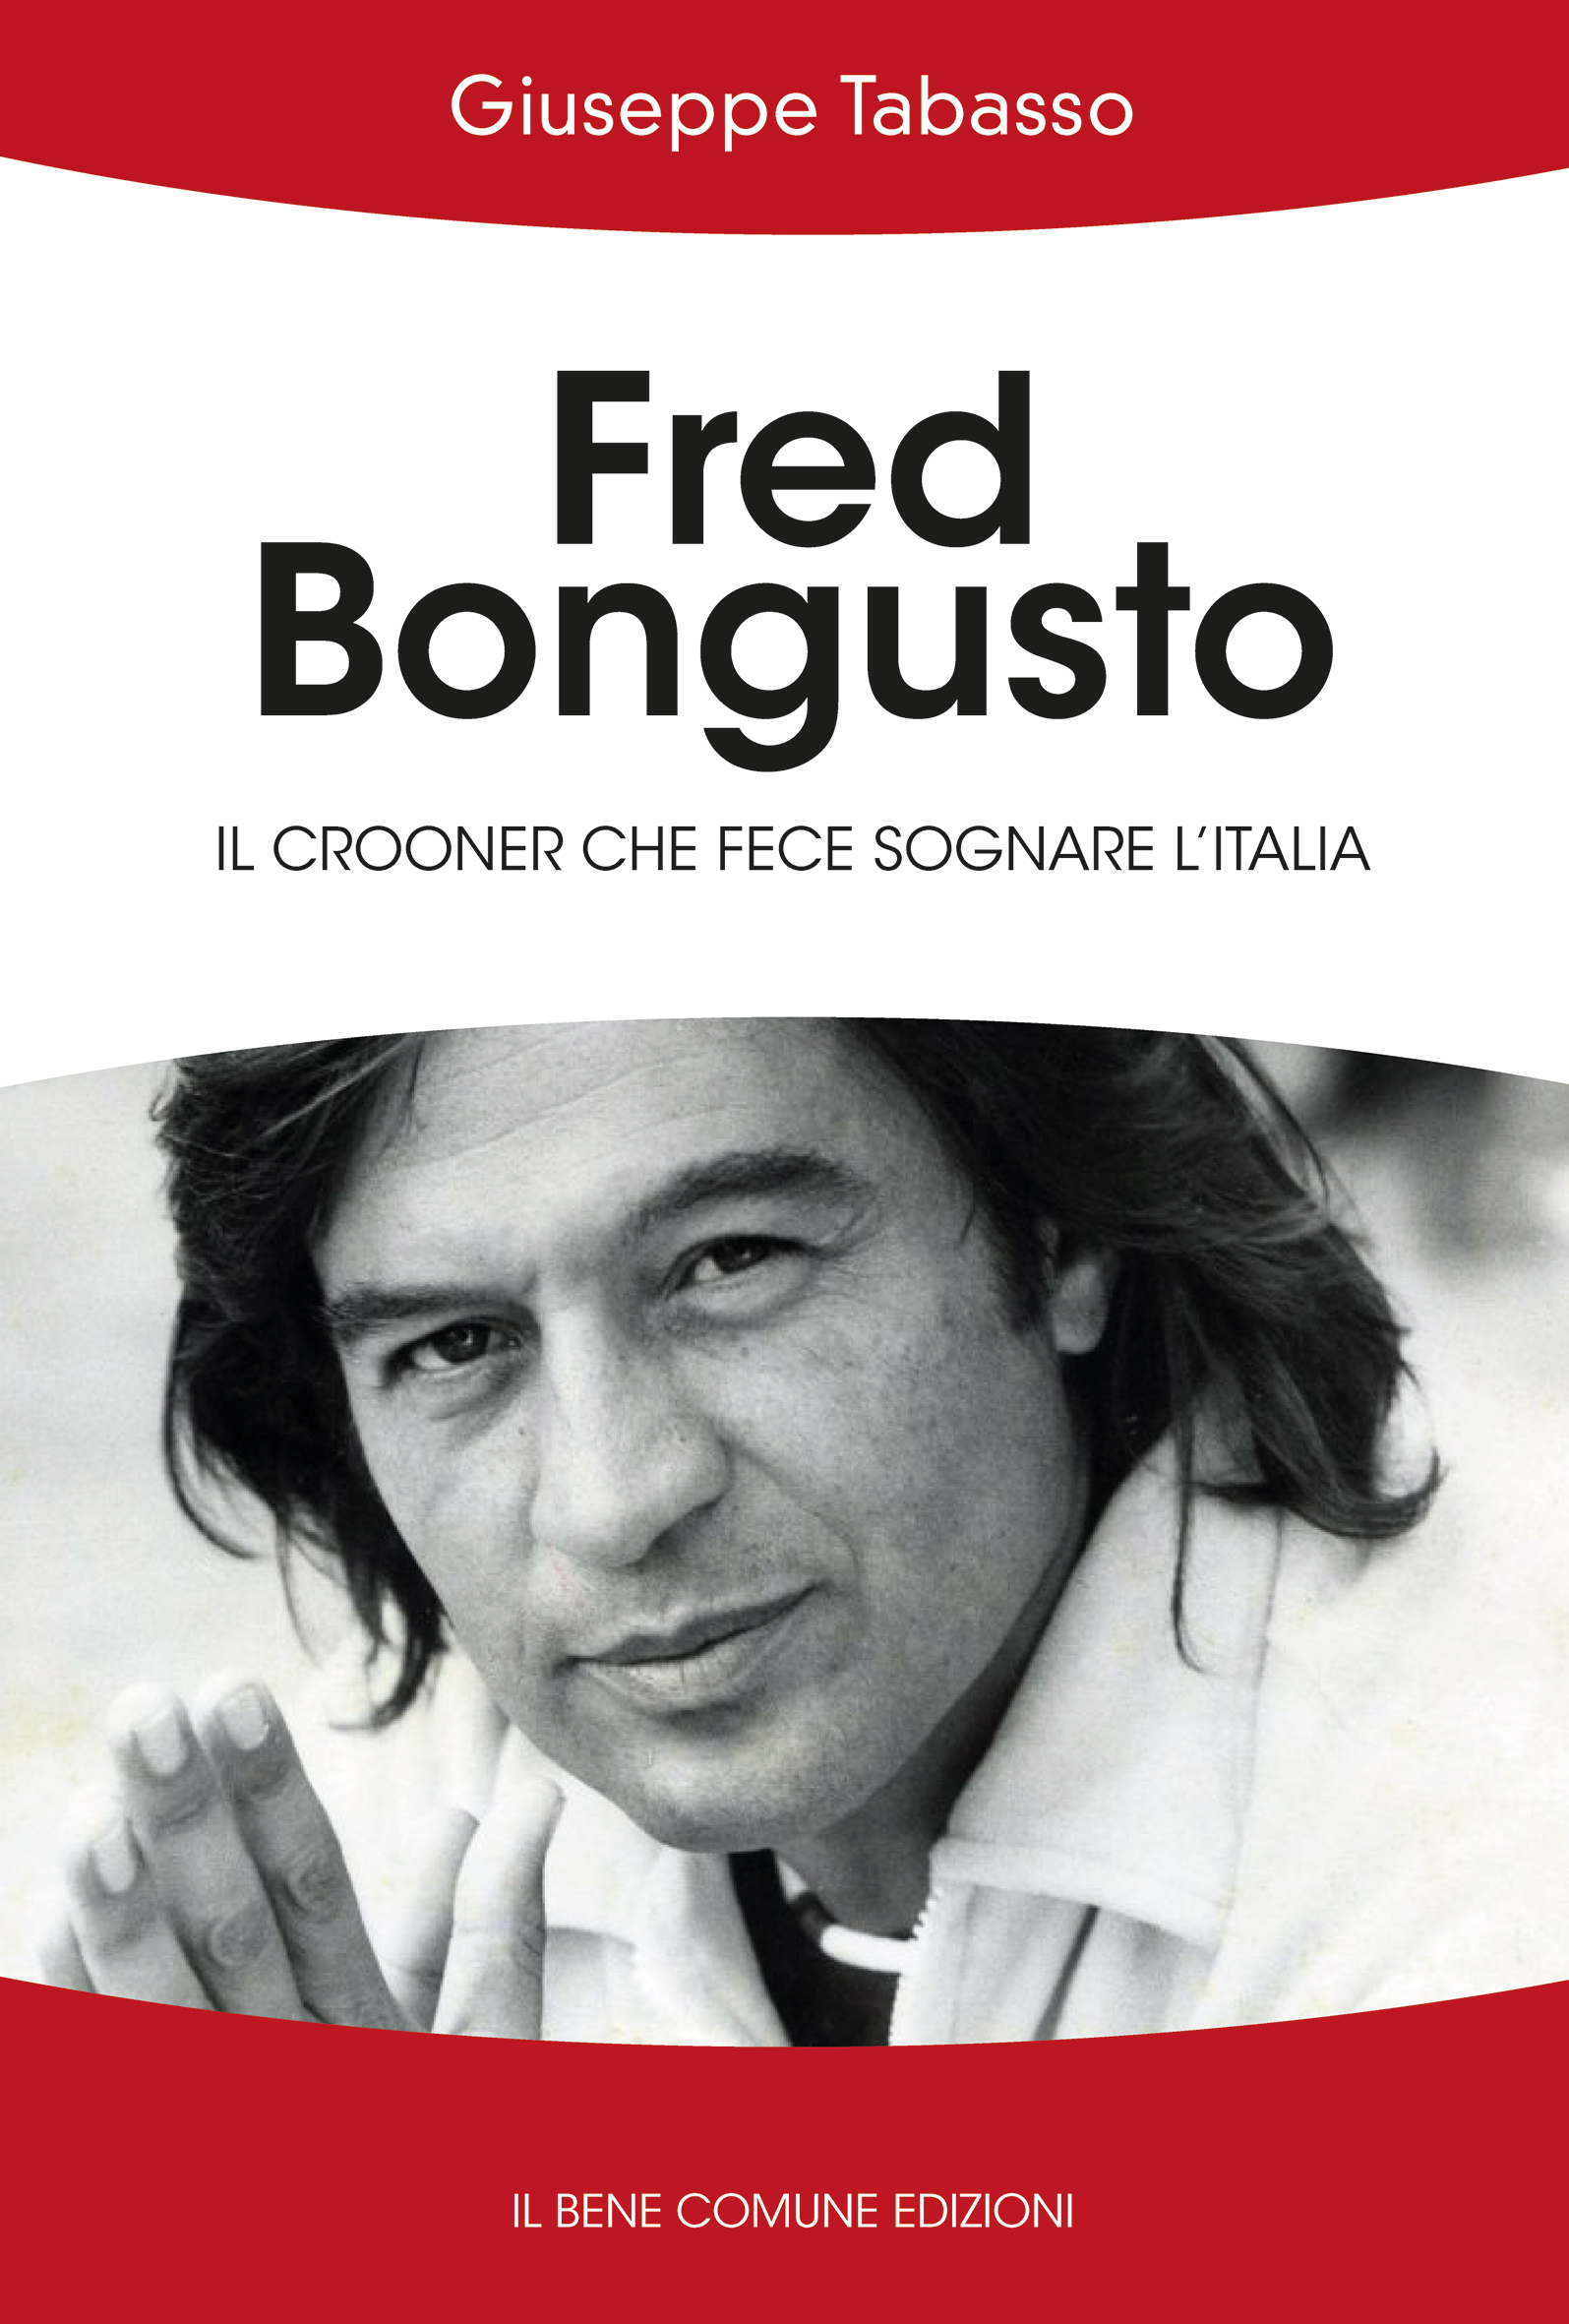 Libro "Fred Bongusto- il crooner che fece sognare l'Italia